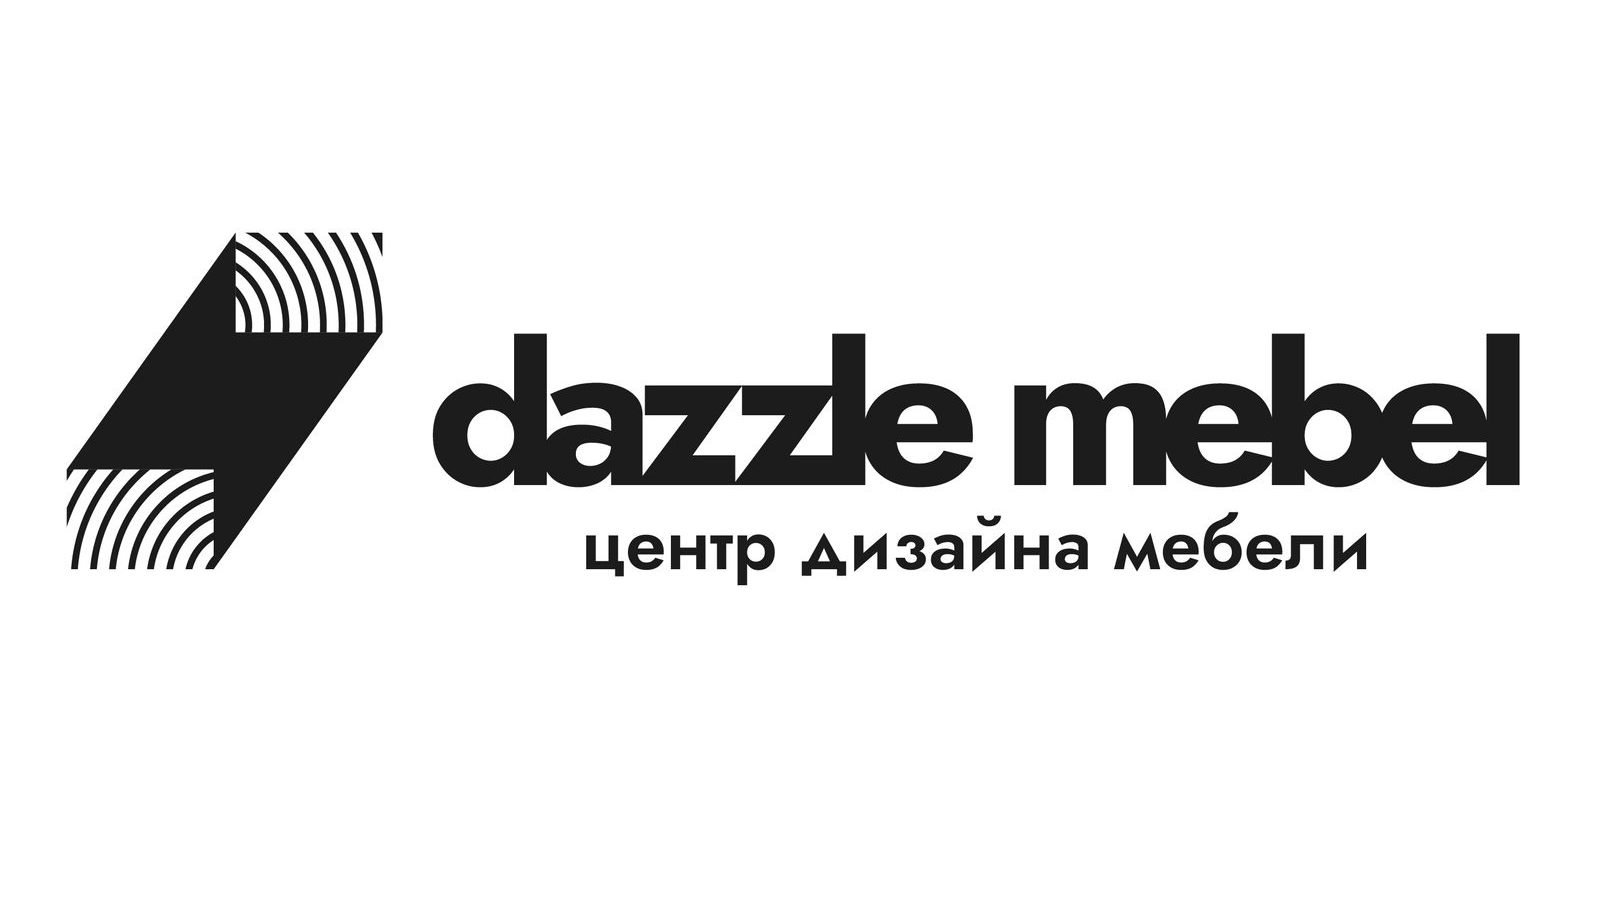 Открытие Шоу-рума мебели Dazzle mebel